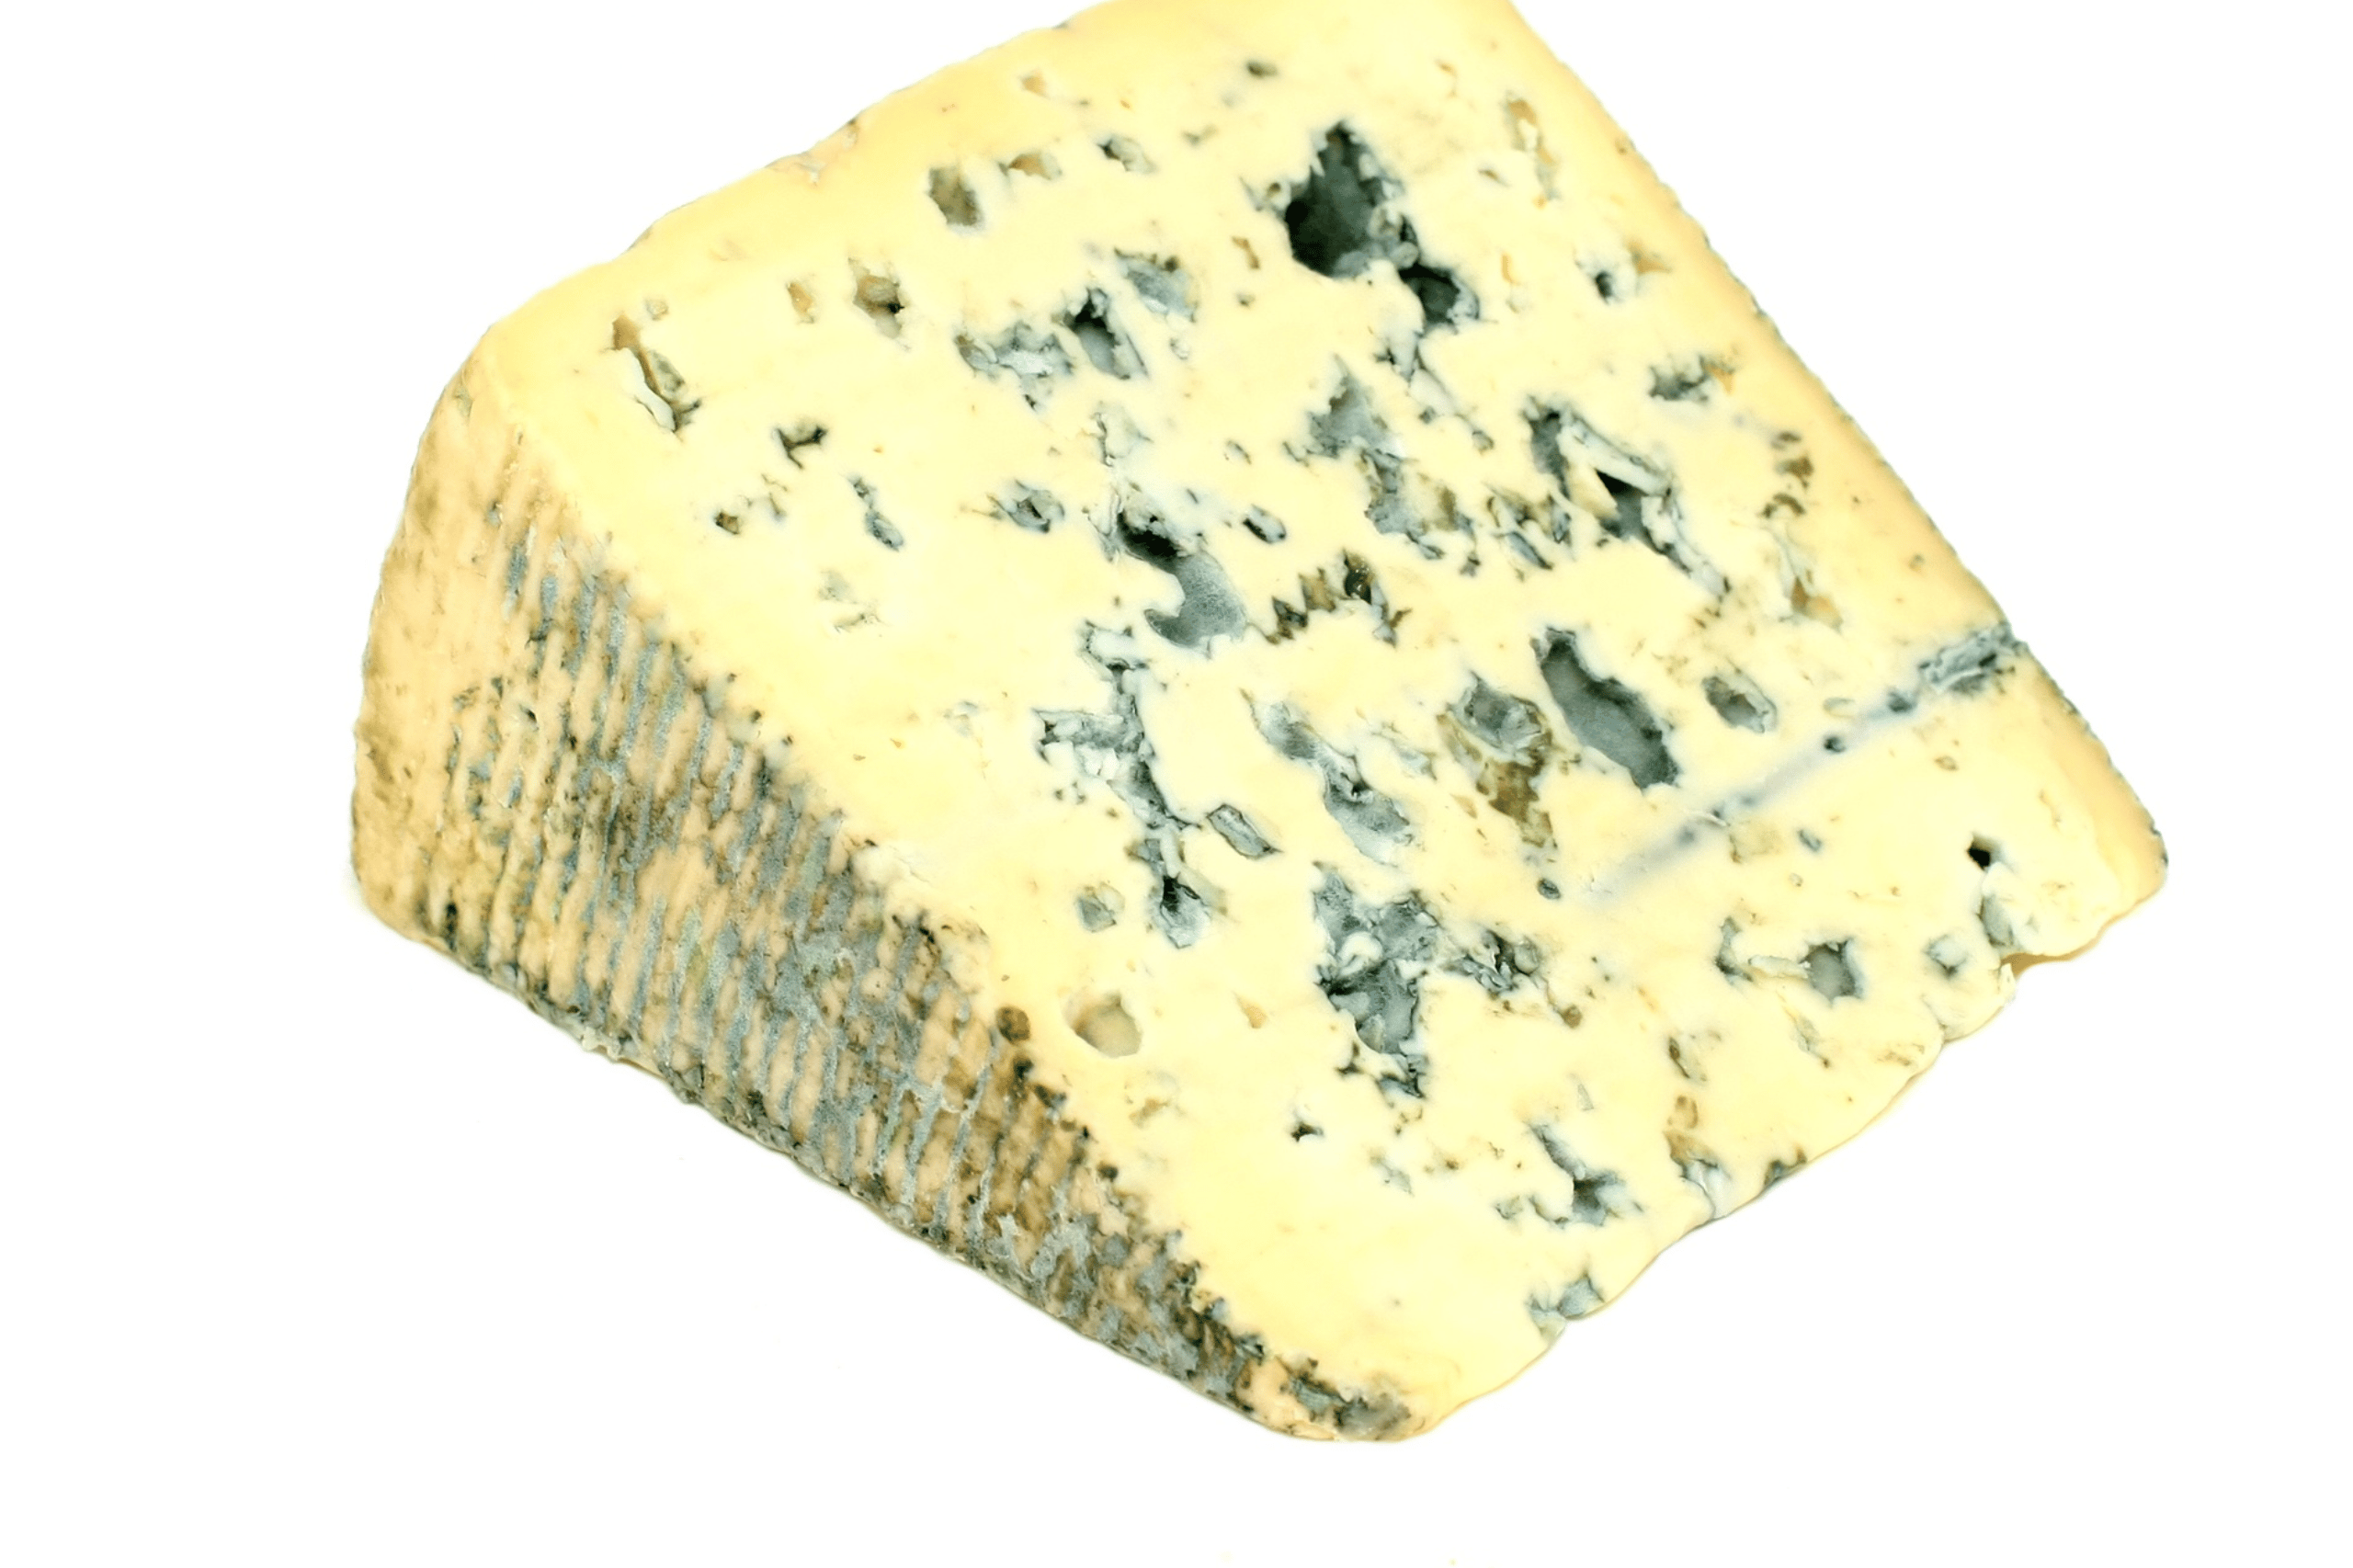 Bleu d'Auvergne 0.5 lb - Cow's Milk